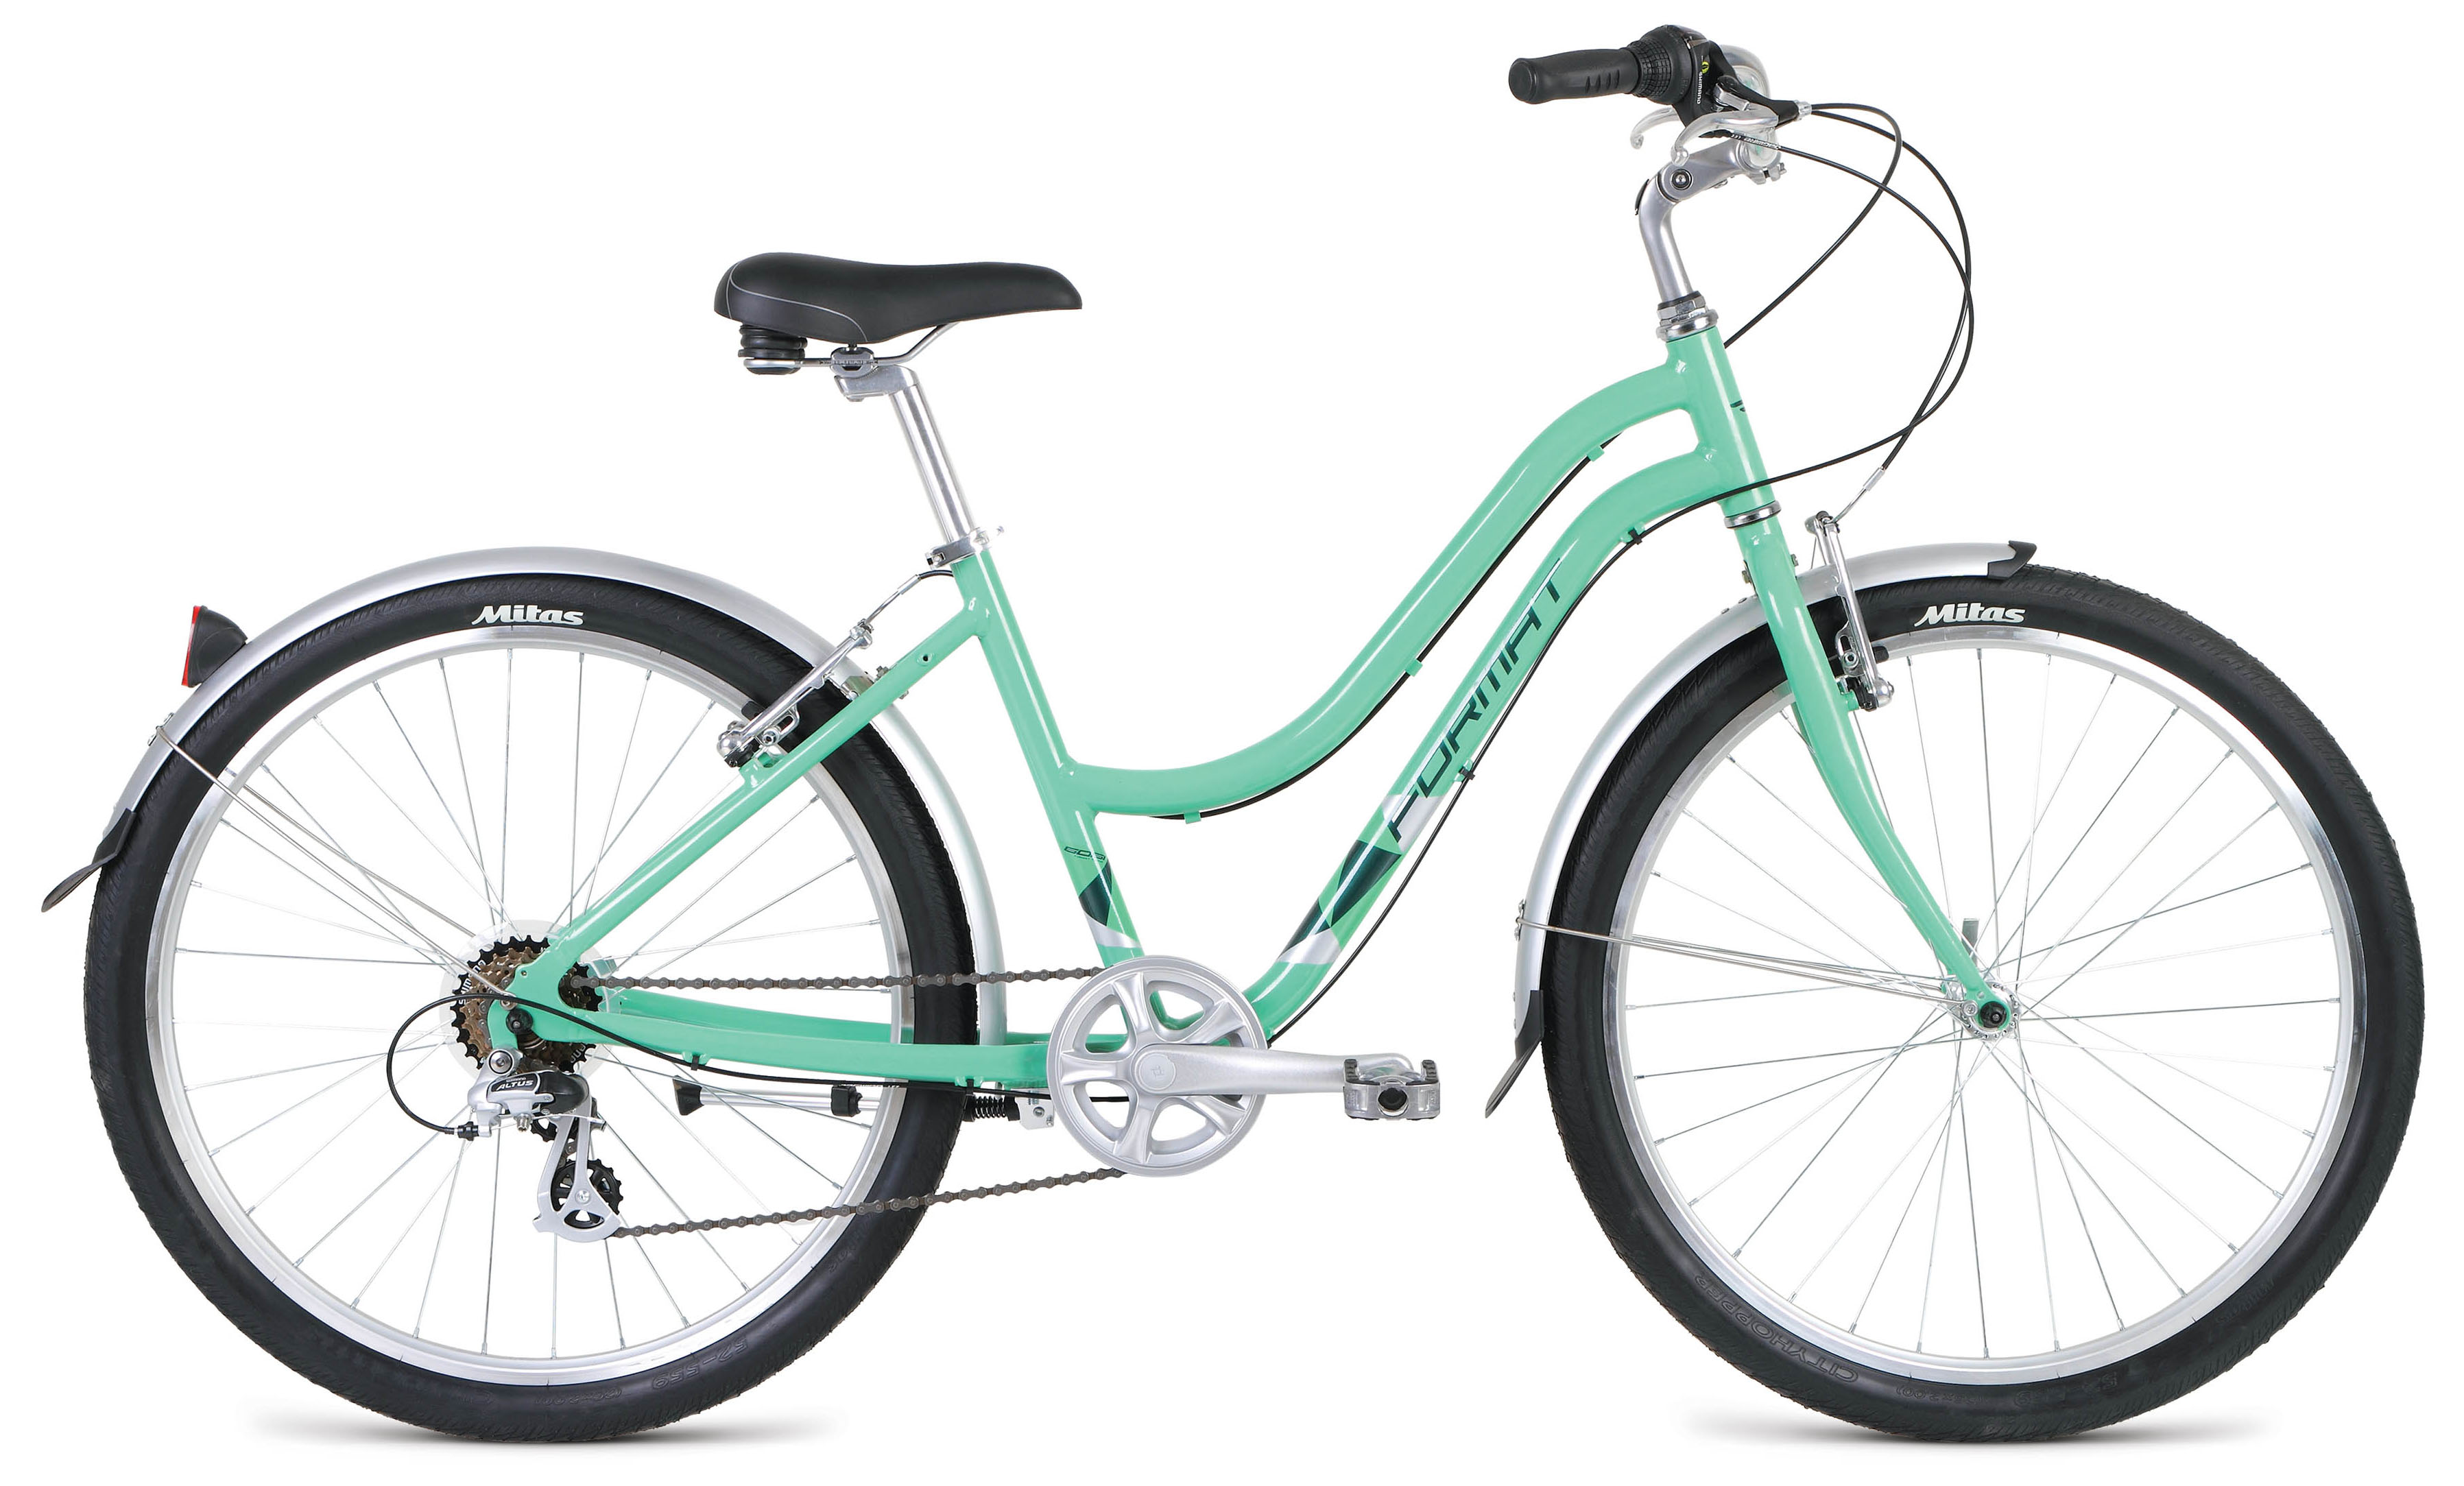  Отзывы о Городском велосипеде Format 7733 2019